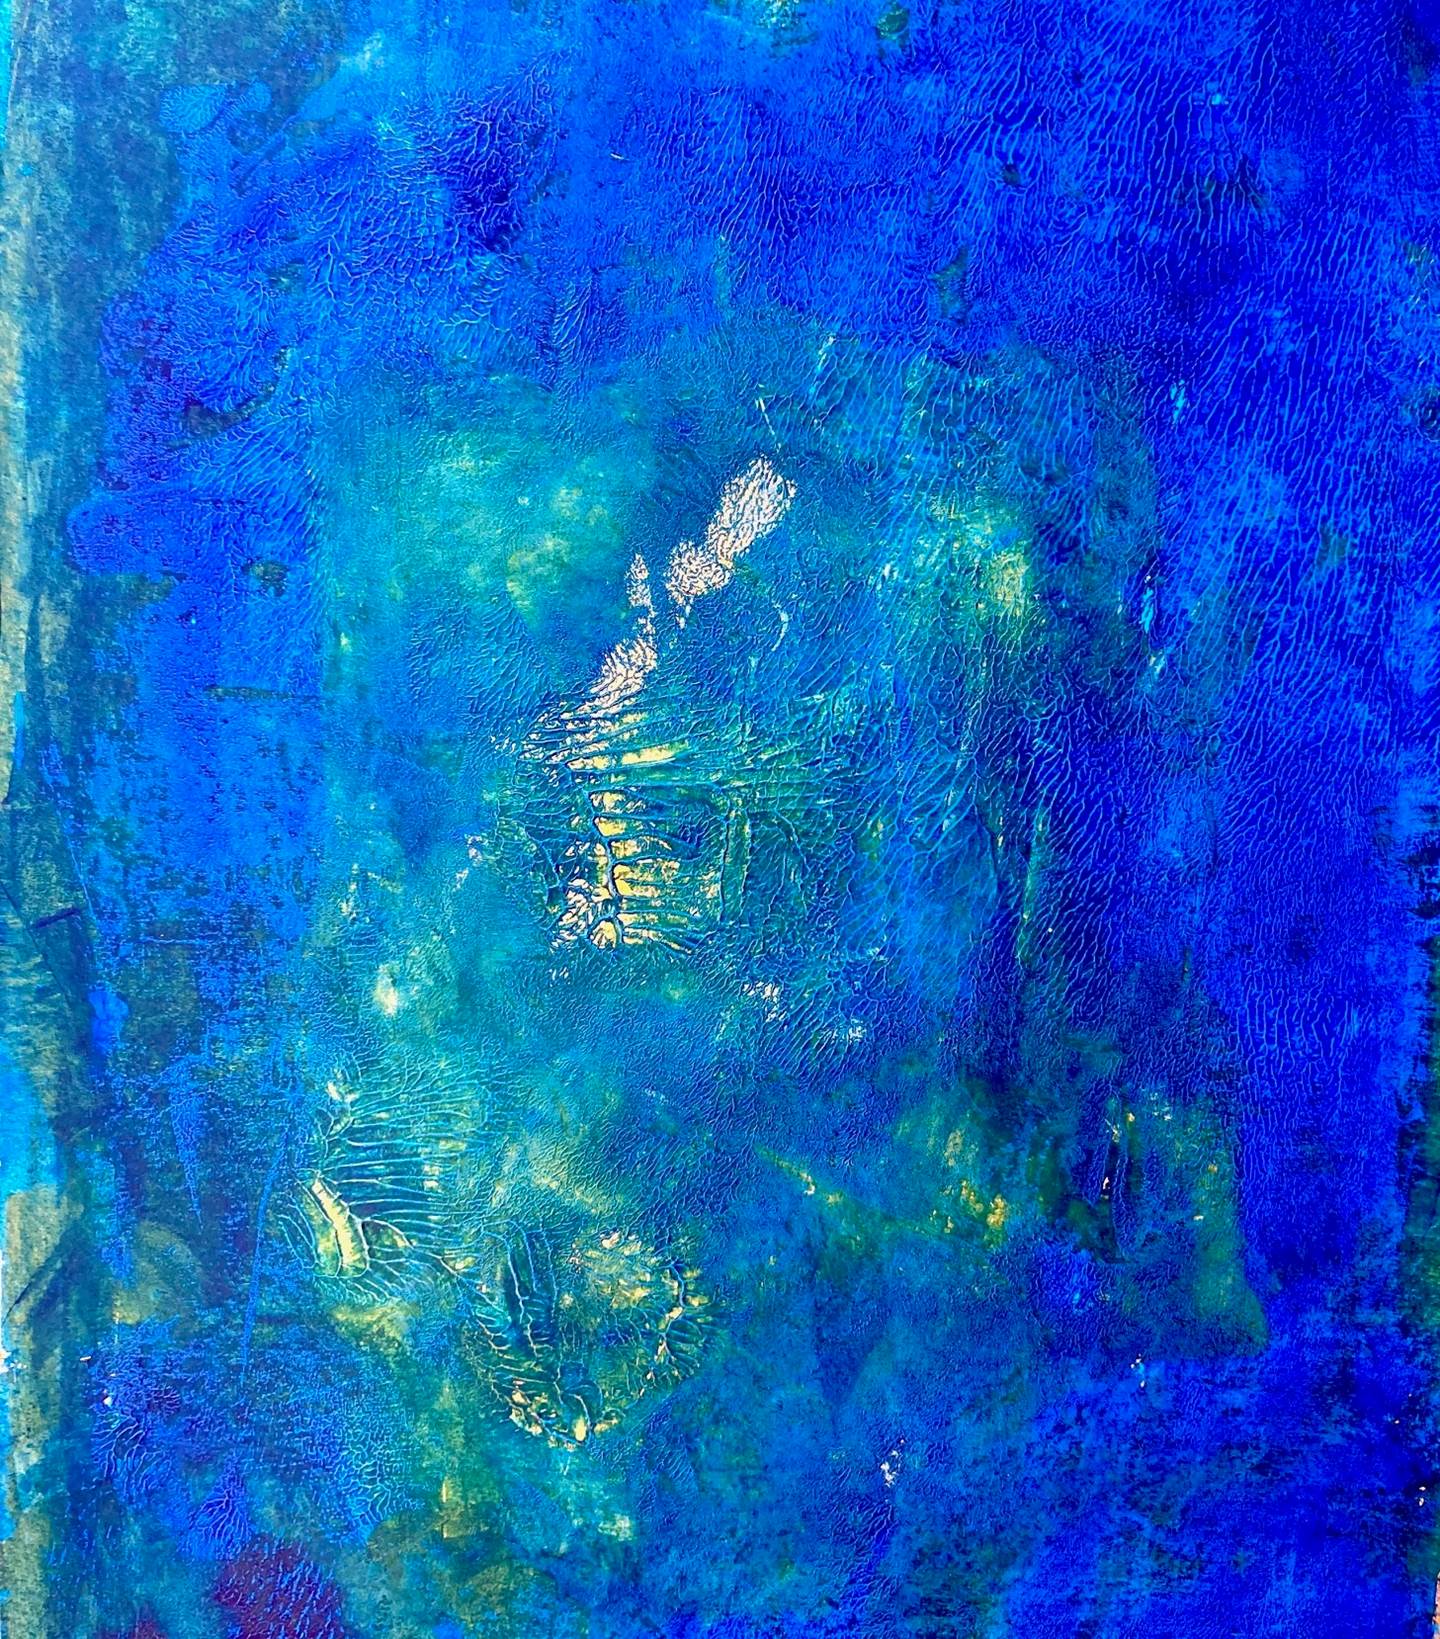 Le Grand Bleu, original Retrato Acrílico Pintura de Nina  Onaur